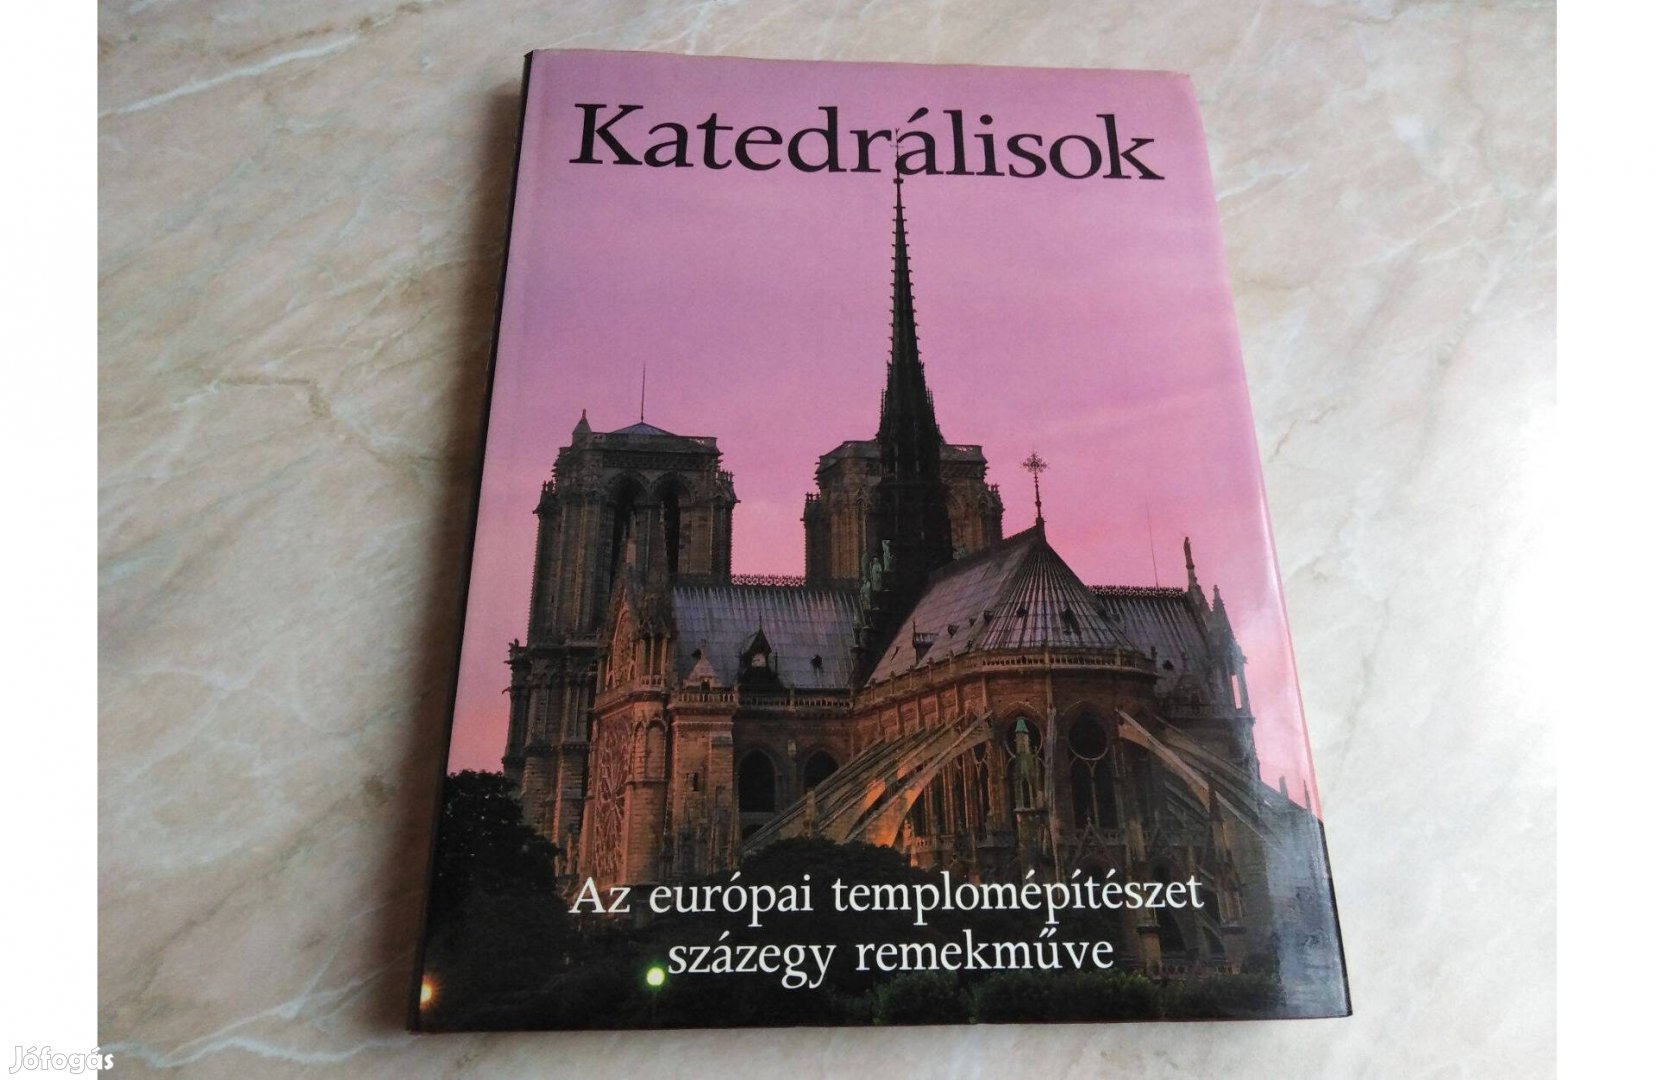 Katedrálisok - Az európai templomépítészet 101 remekműve